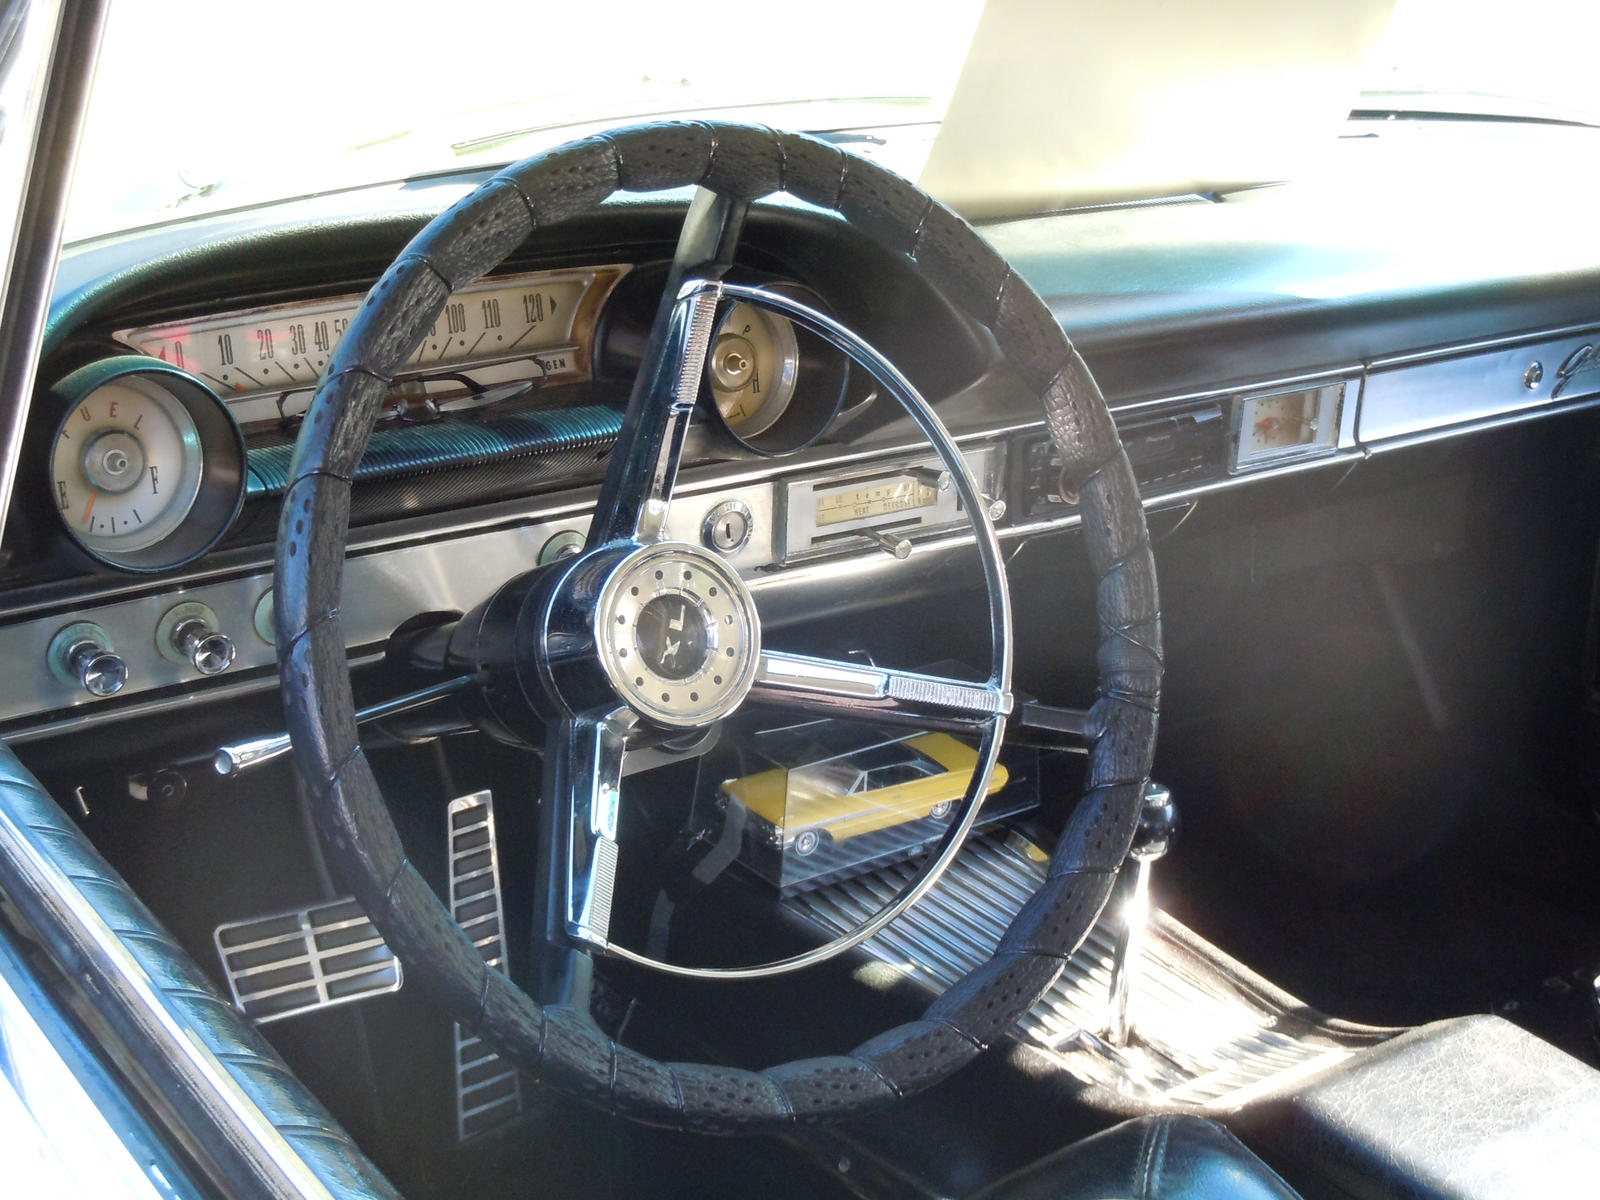 1964 Ford Galaxie 500 Xl Interior By Brooklyn47 On Deviantart